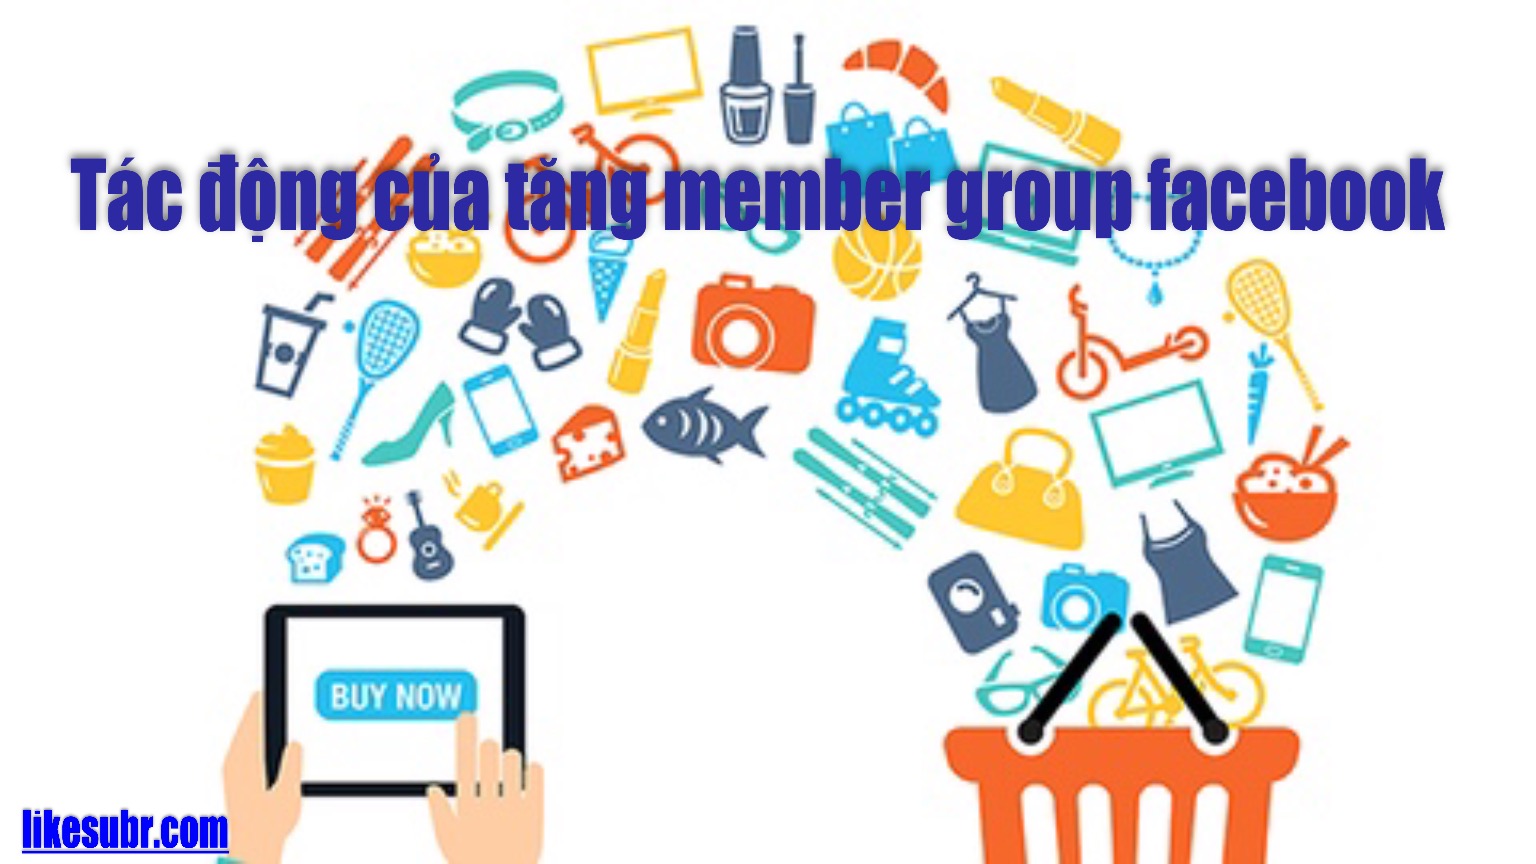 Tác động của tăng member group facebook